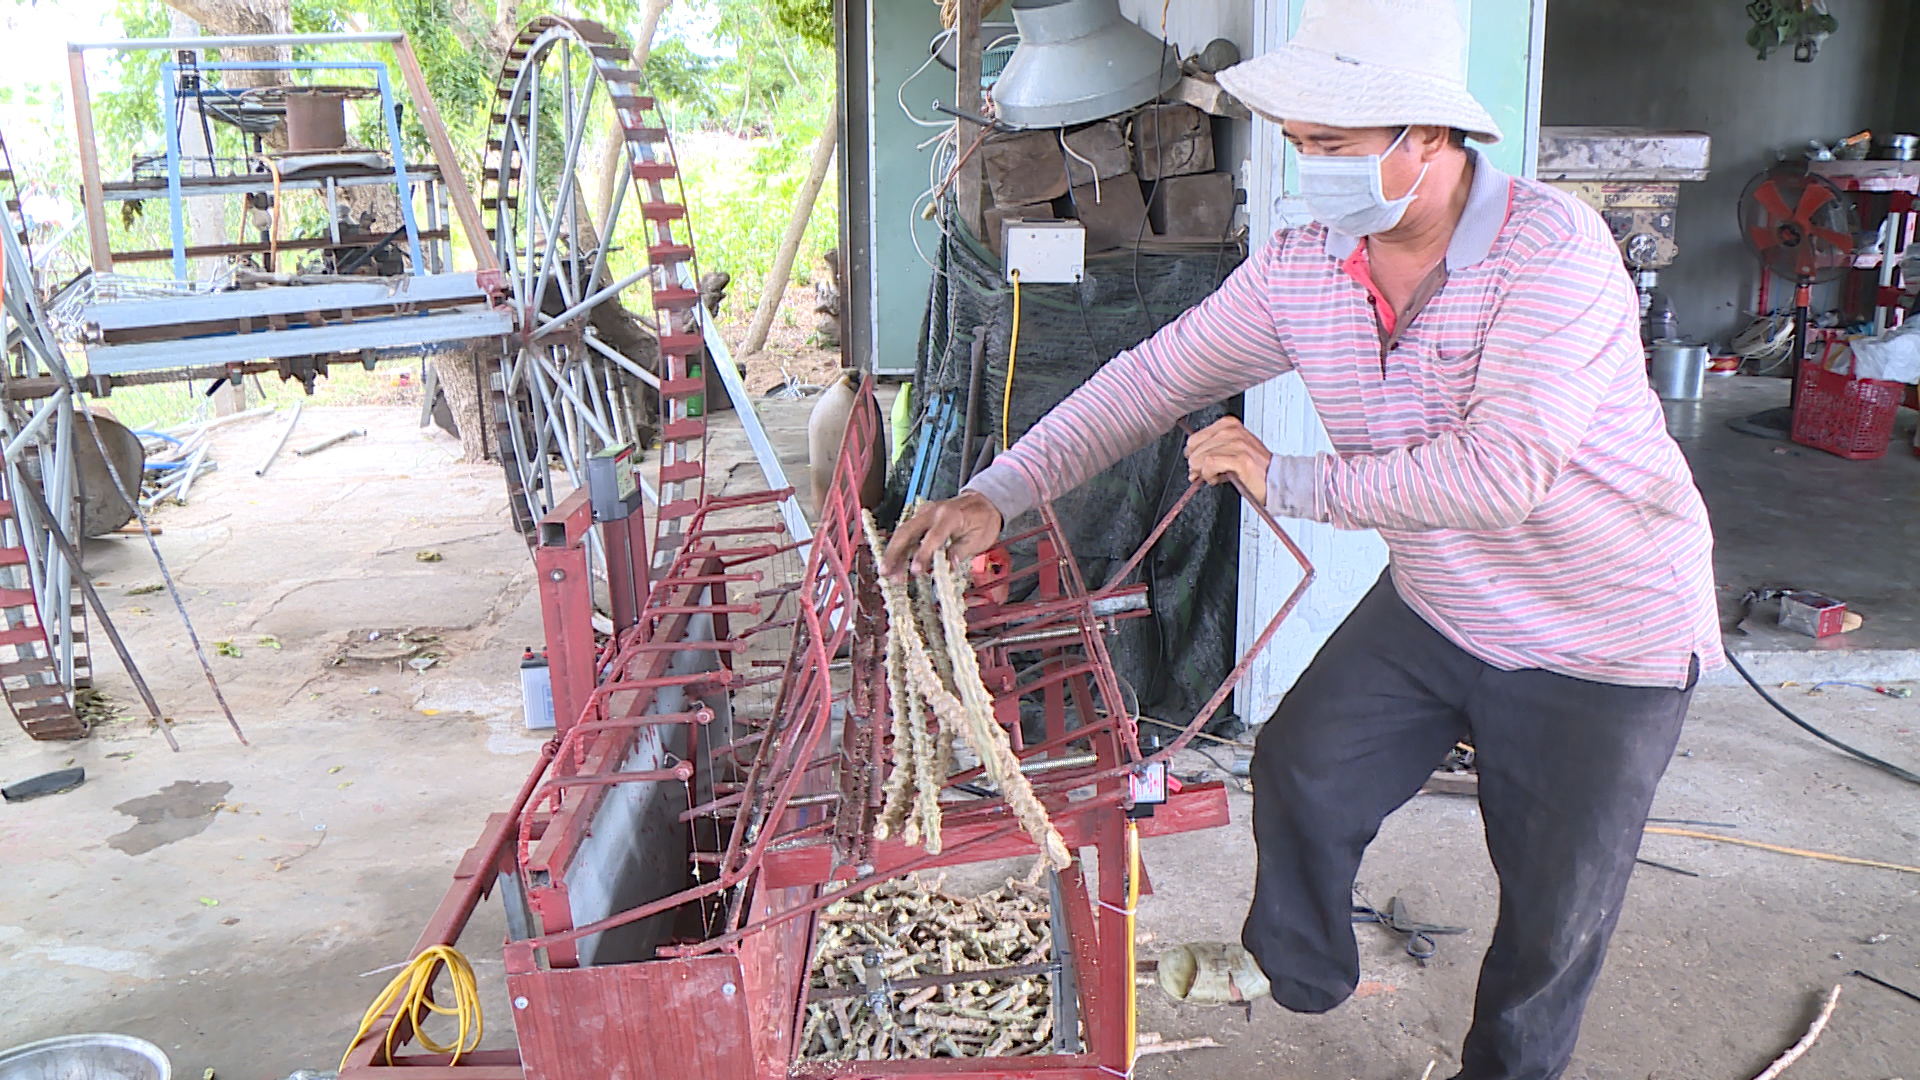 Anh nông dân mới học lớp 5 ở Gia Lai sáng chế máy nông nghiệp khiến cả làng phục lăn - Ảnh 6.